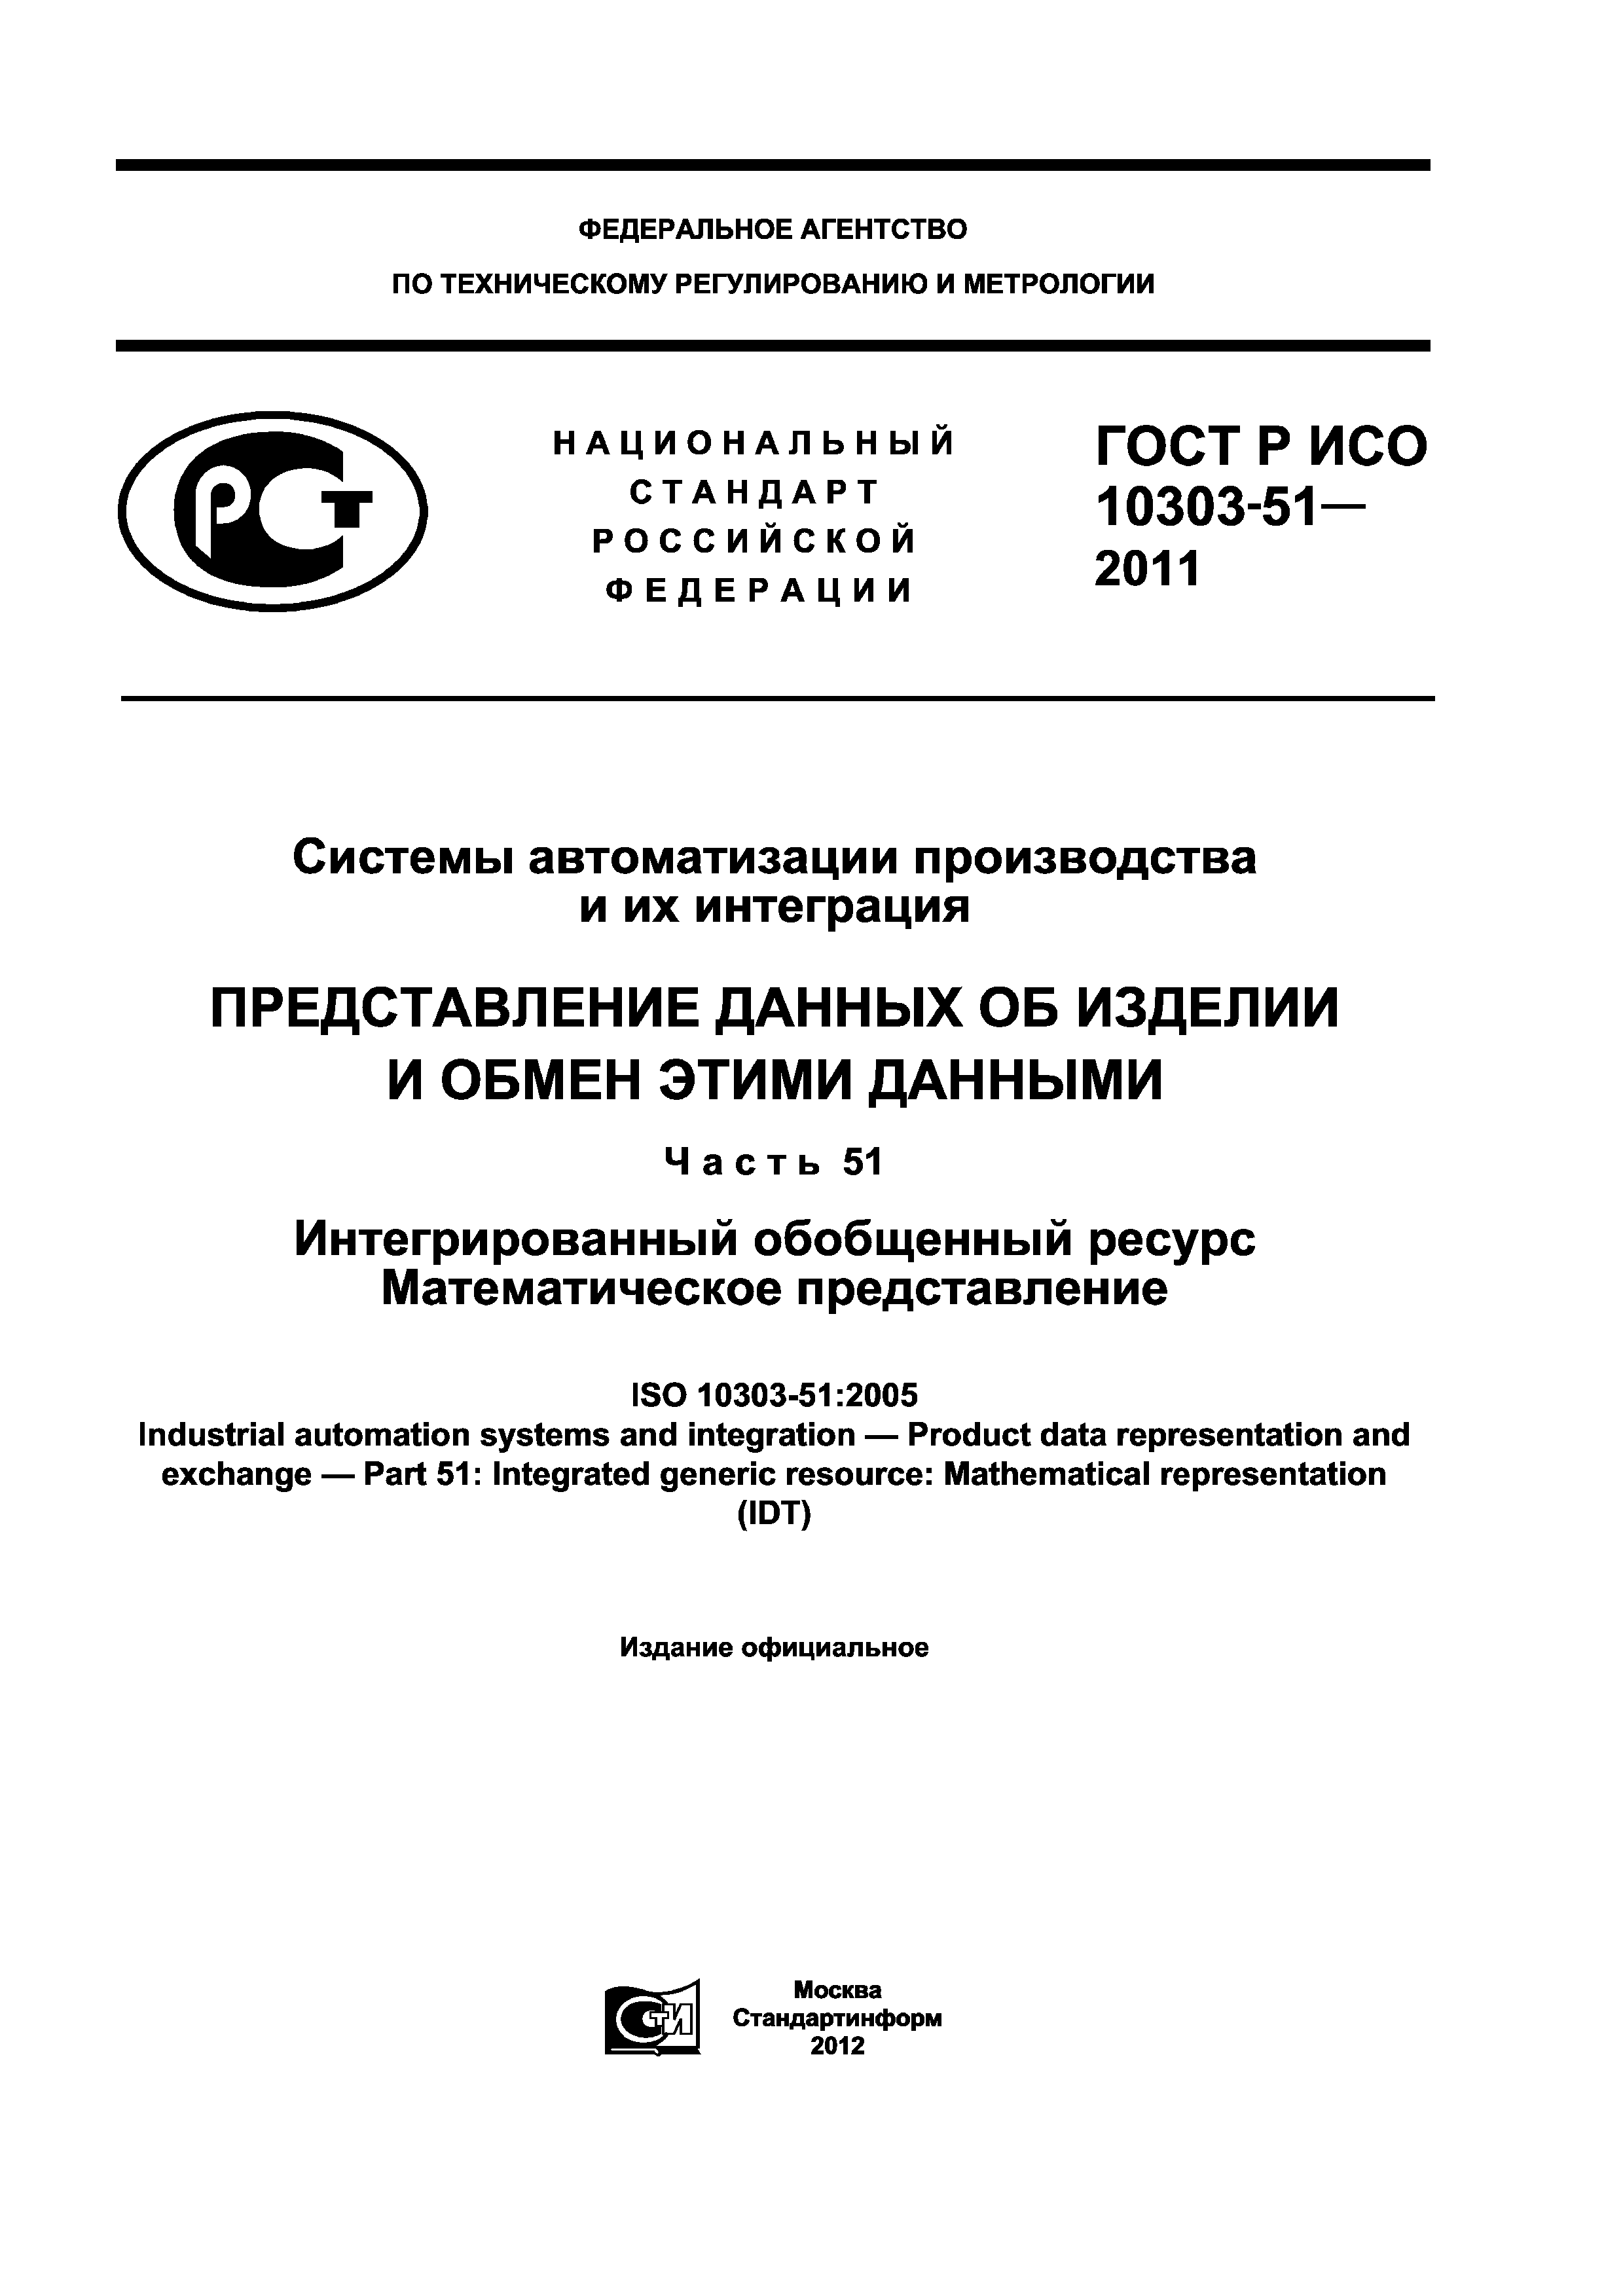 ГОСТ Р ИСО 10303-51-2011